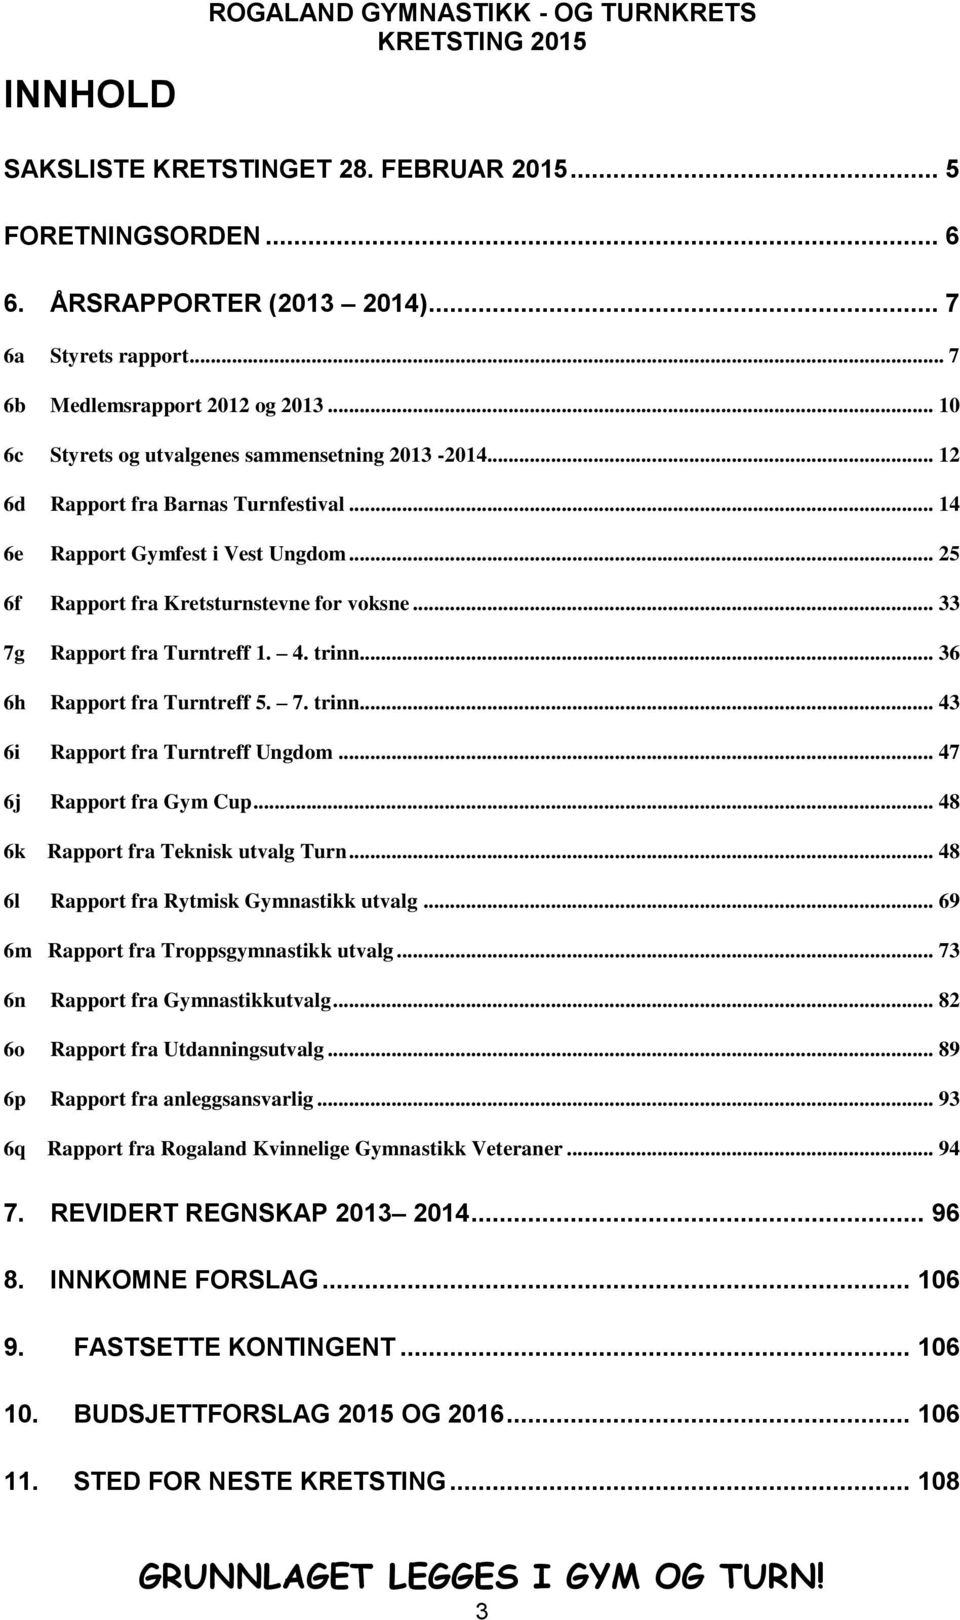 .. 33 7g Rapport fra Turntreff 1. 4. trinn... 36 6h Rapport fra Turntreff 5. 7. trinn... 43 6i Rapport fra Turntreff Ungdom... 47 6j Rapport fra Gym Cup... 48 6k Rapport fra Teknisk utvalg Turn.